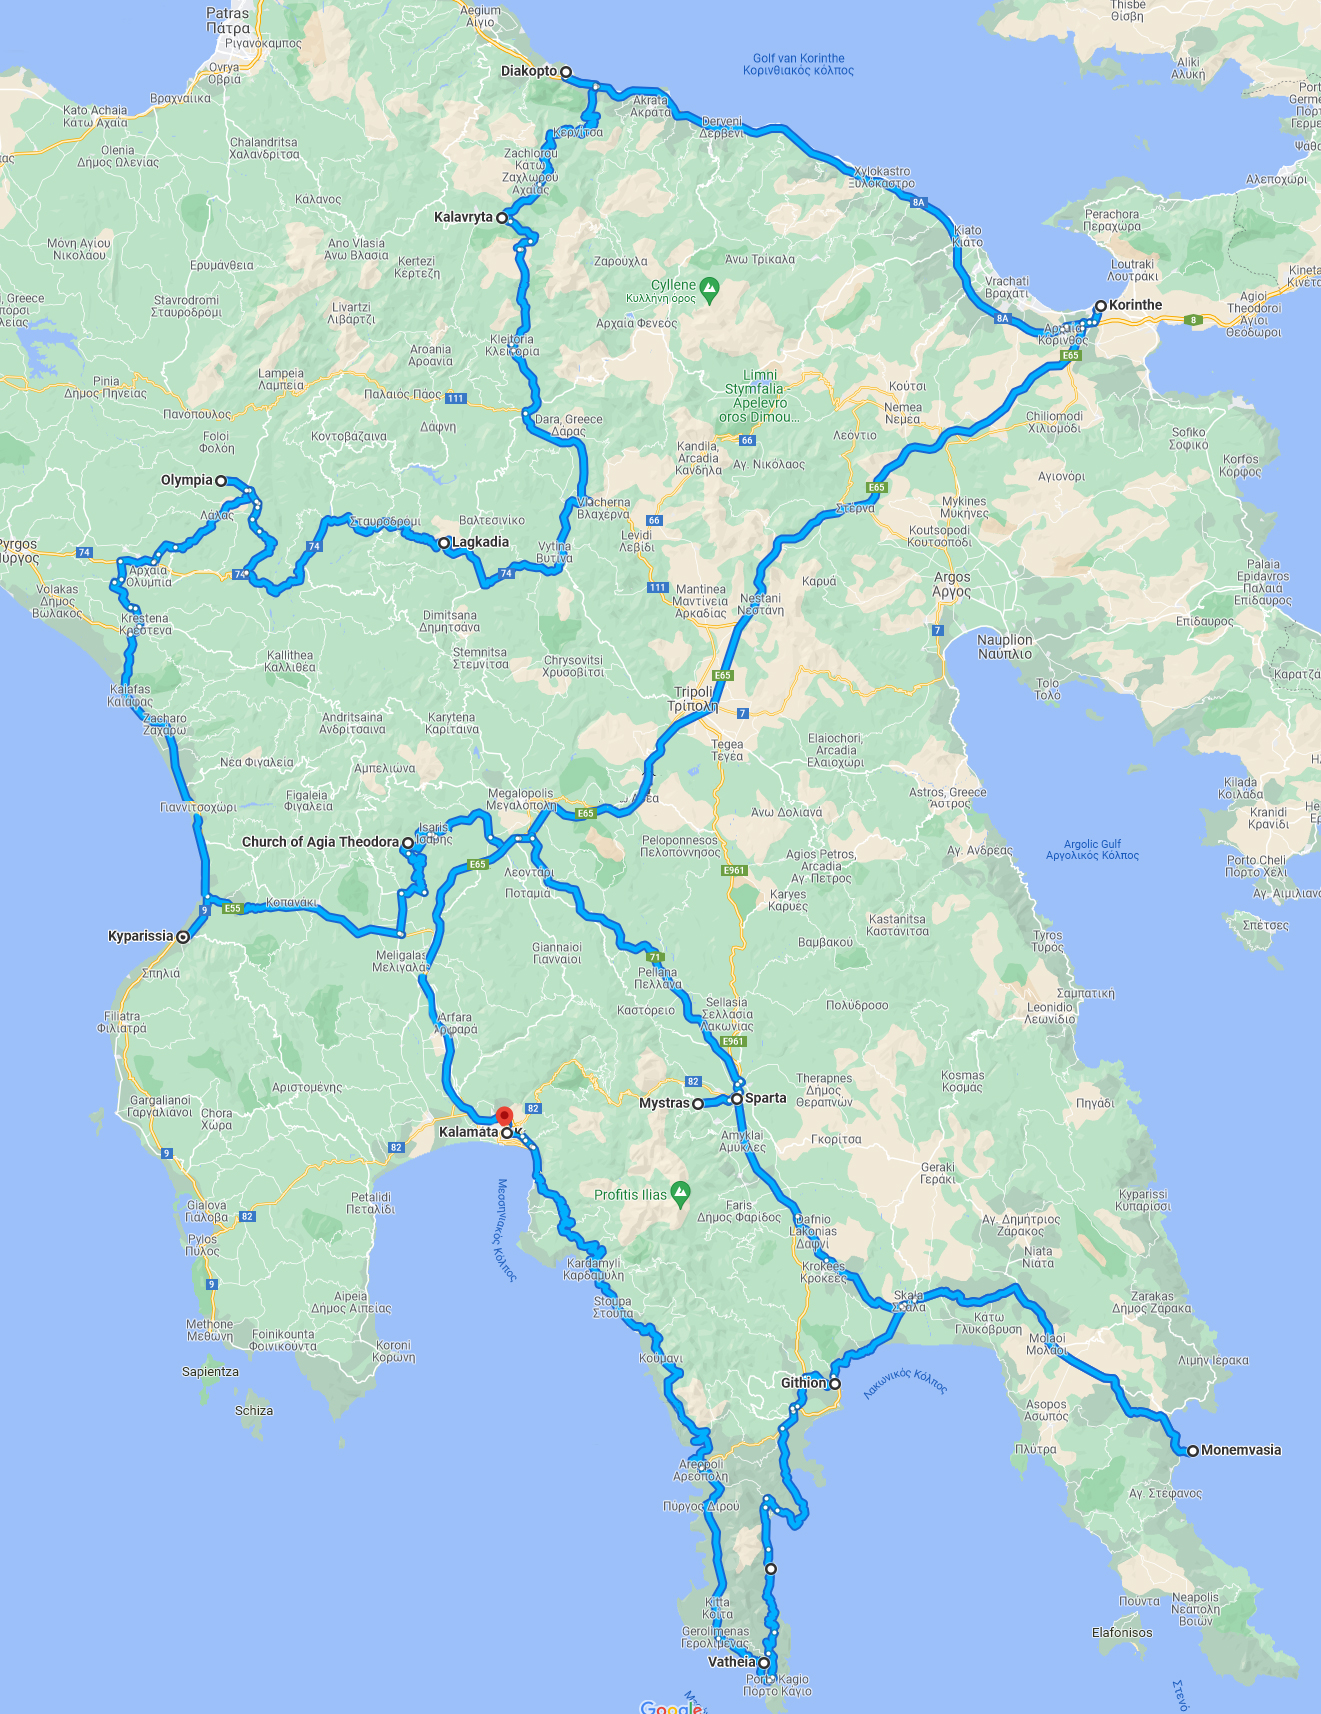 Peloponnesus-rondreis